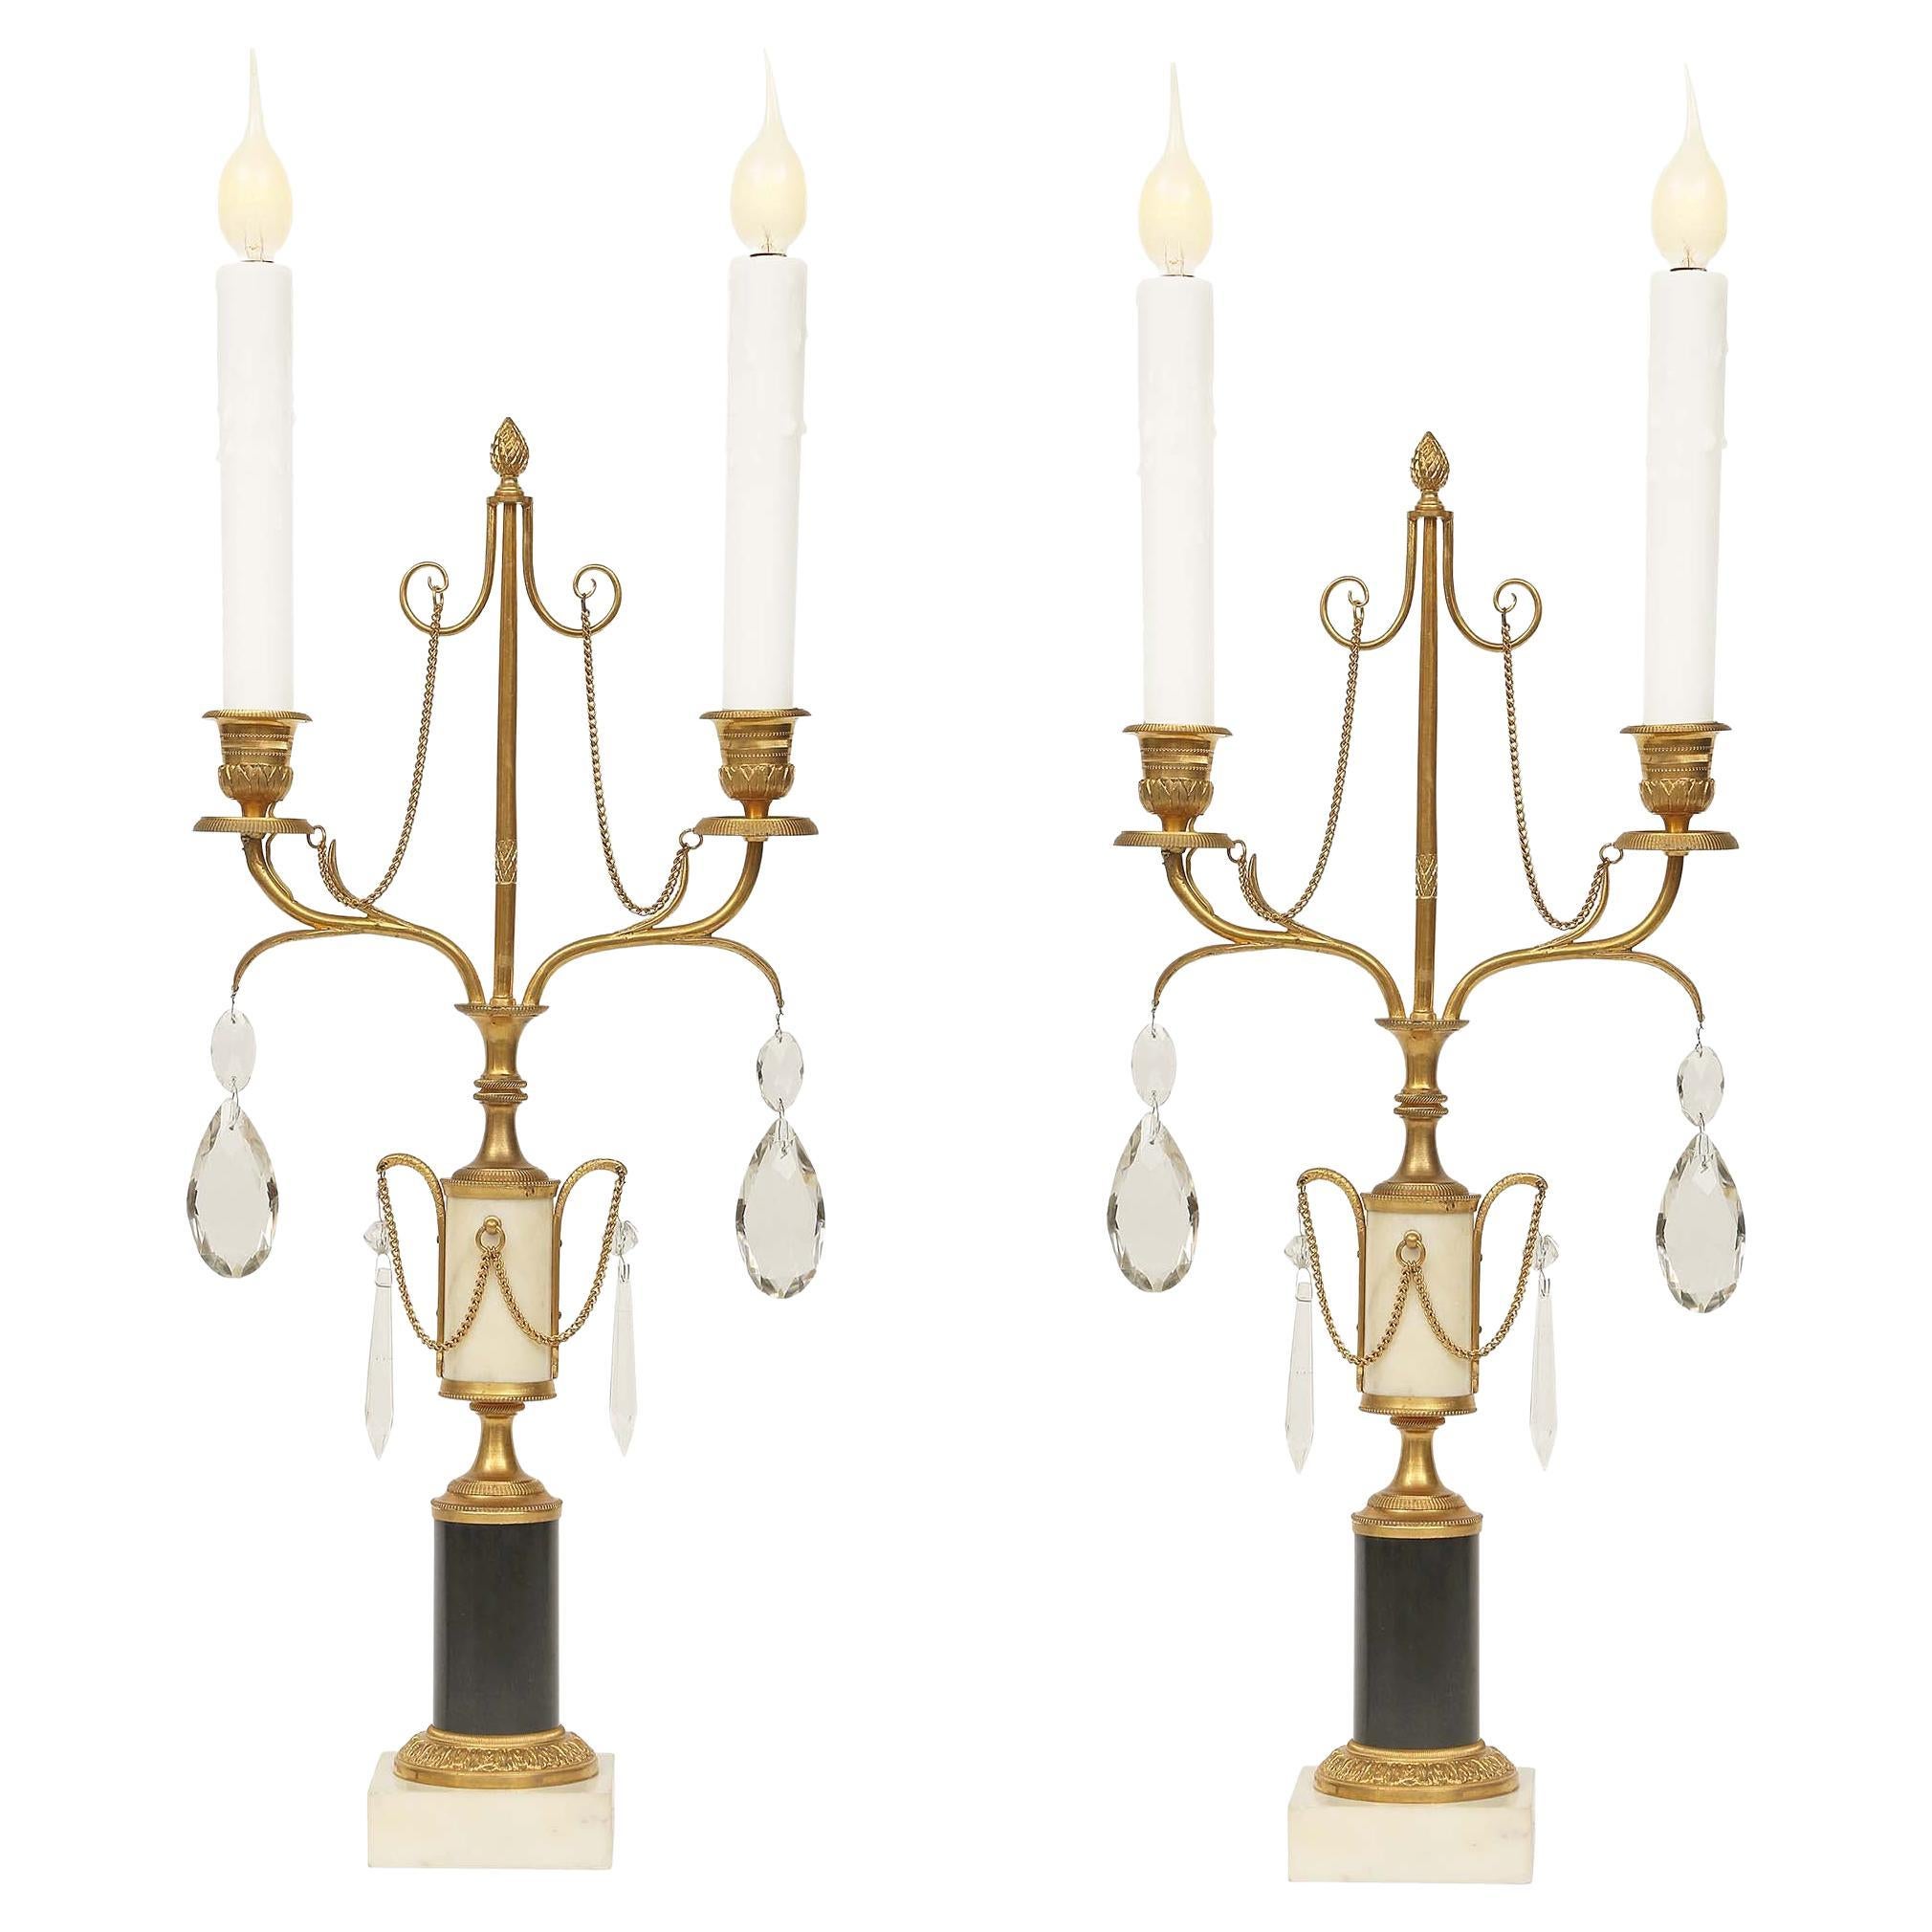 Paire de candélabres de style Louis XVI du début du XIXe siècle français